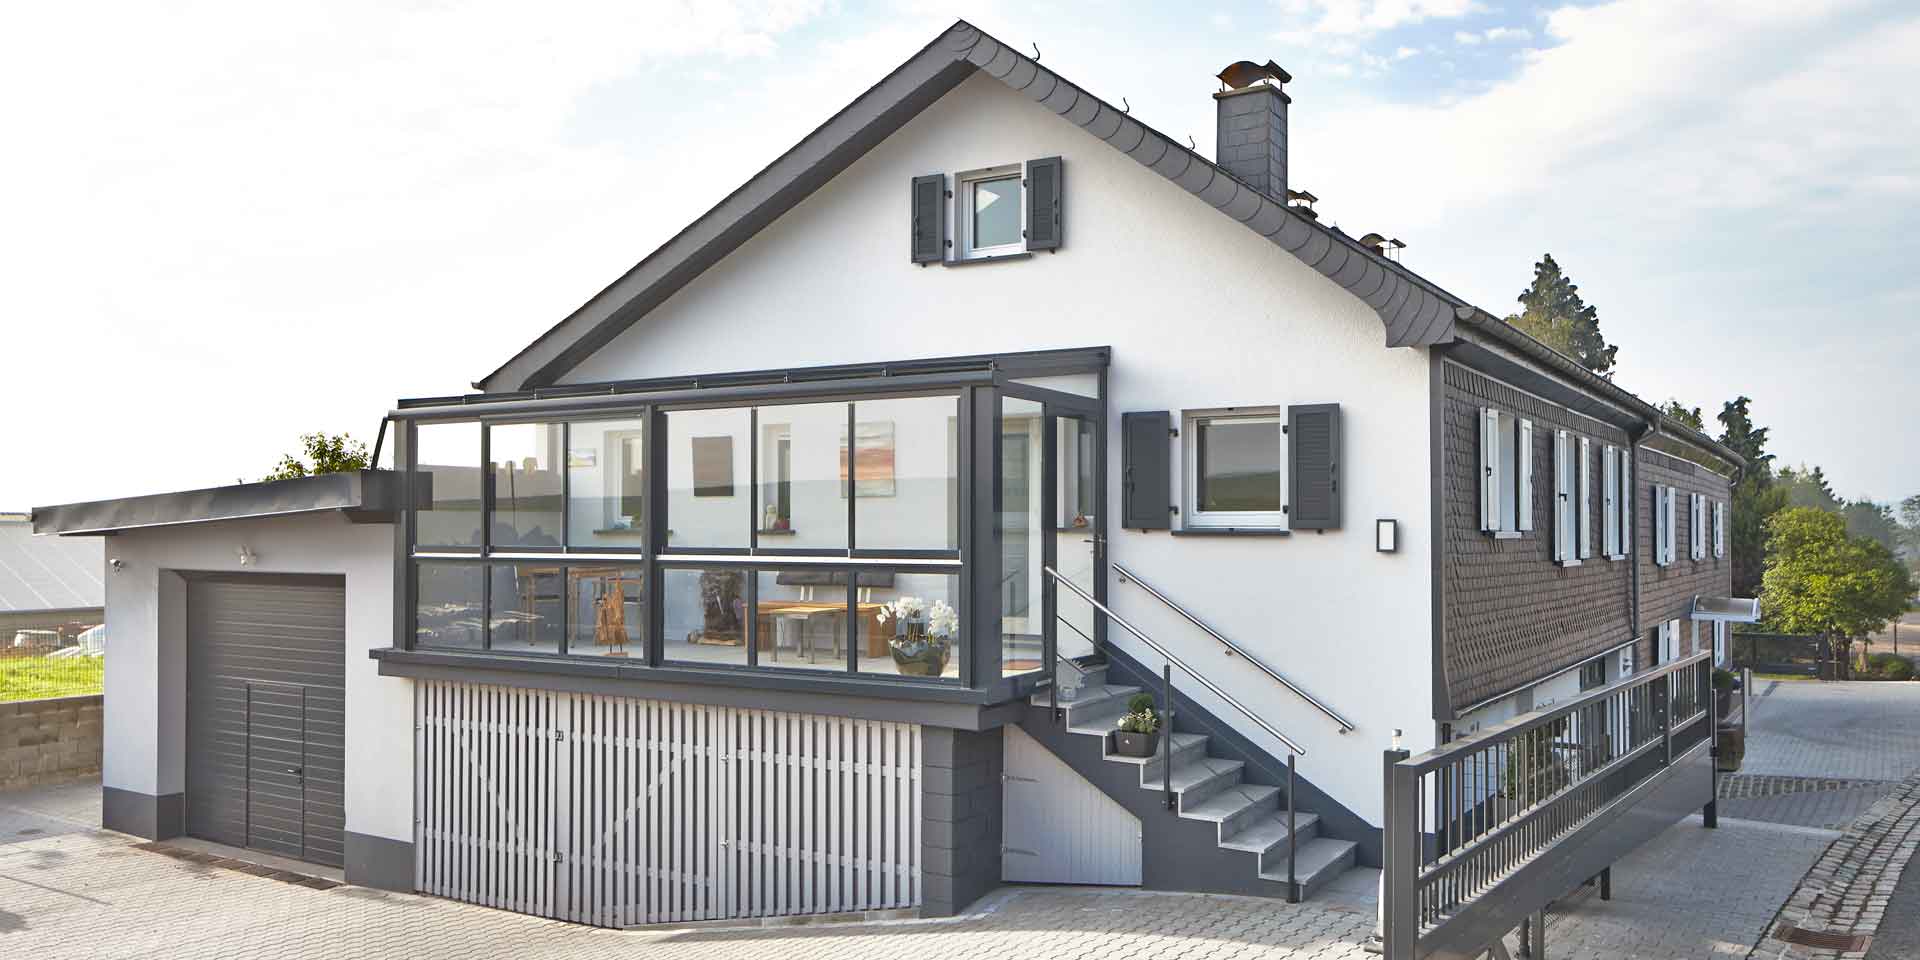 Weißes Einfamilienhaus mit einer Coplaning Veranda Überdachung aus Aluminium, grauem Balkon mit Treppenbereich und einer Verglasung mit Schiebefenster und integrierter Beleuchtung.